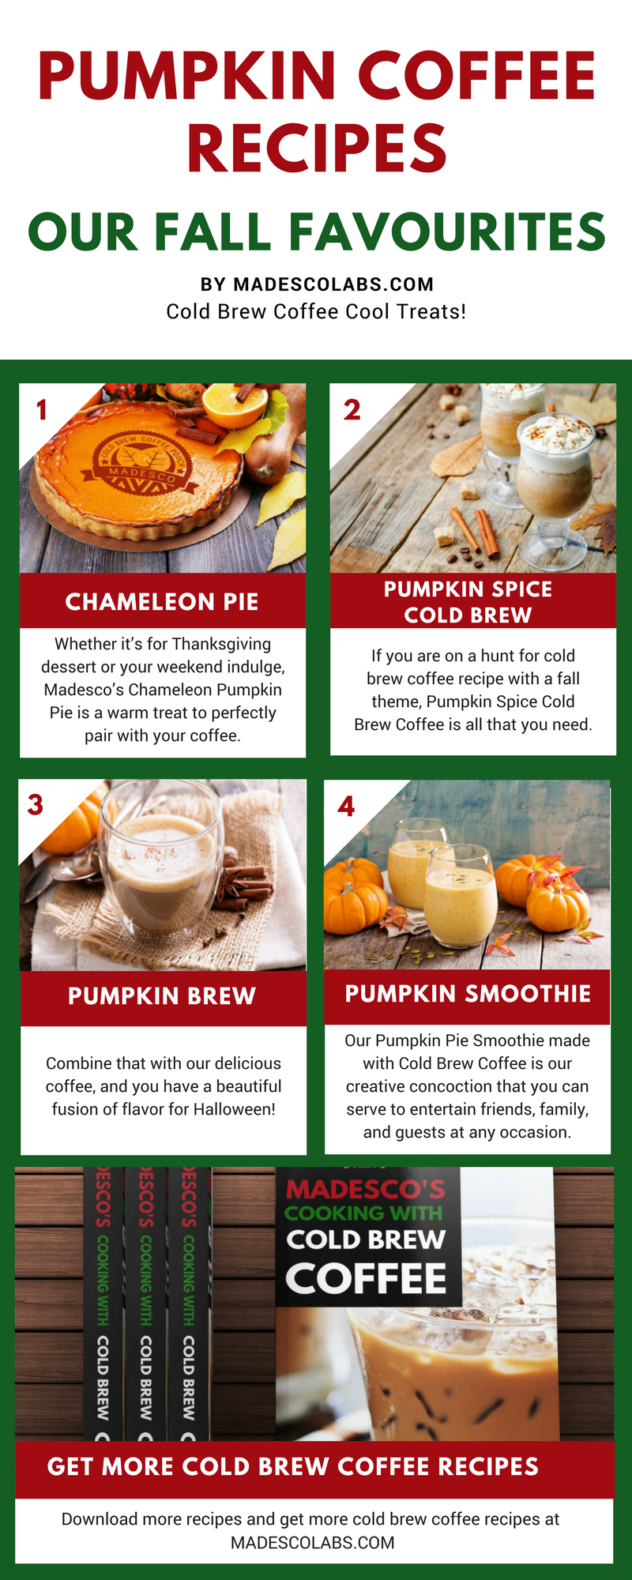 infographic - Pumpkin Coffee Recipes MadescoLabs.com